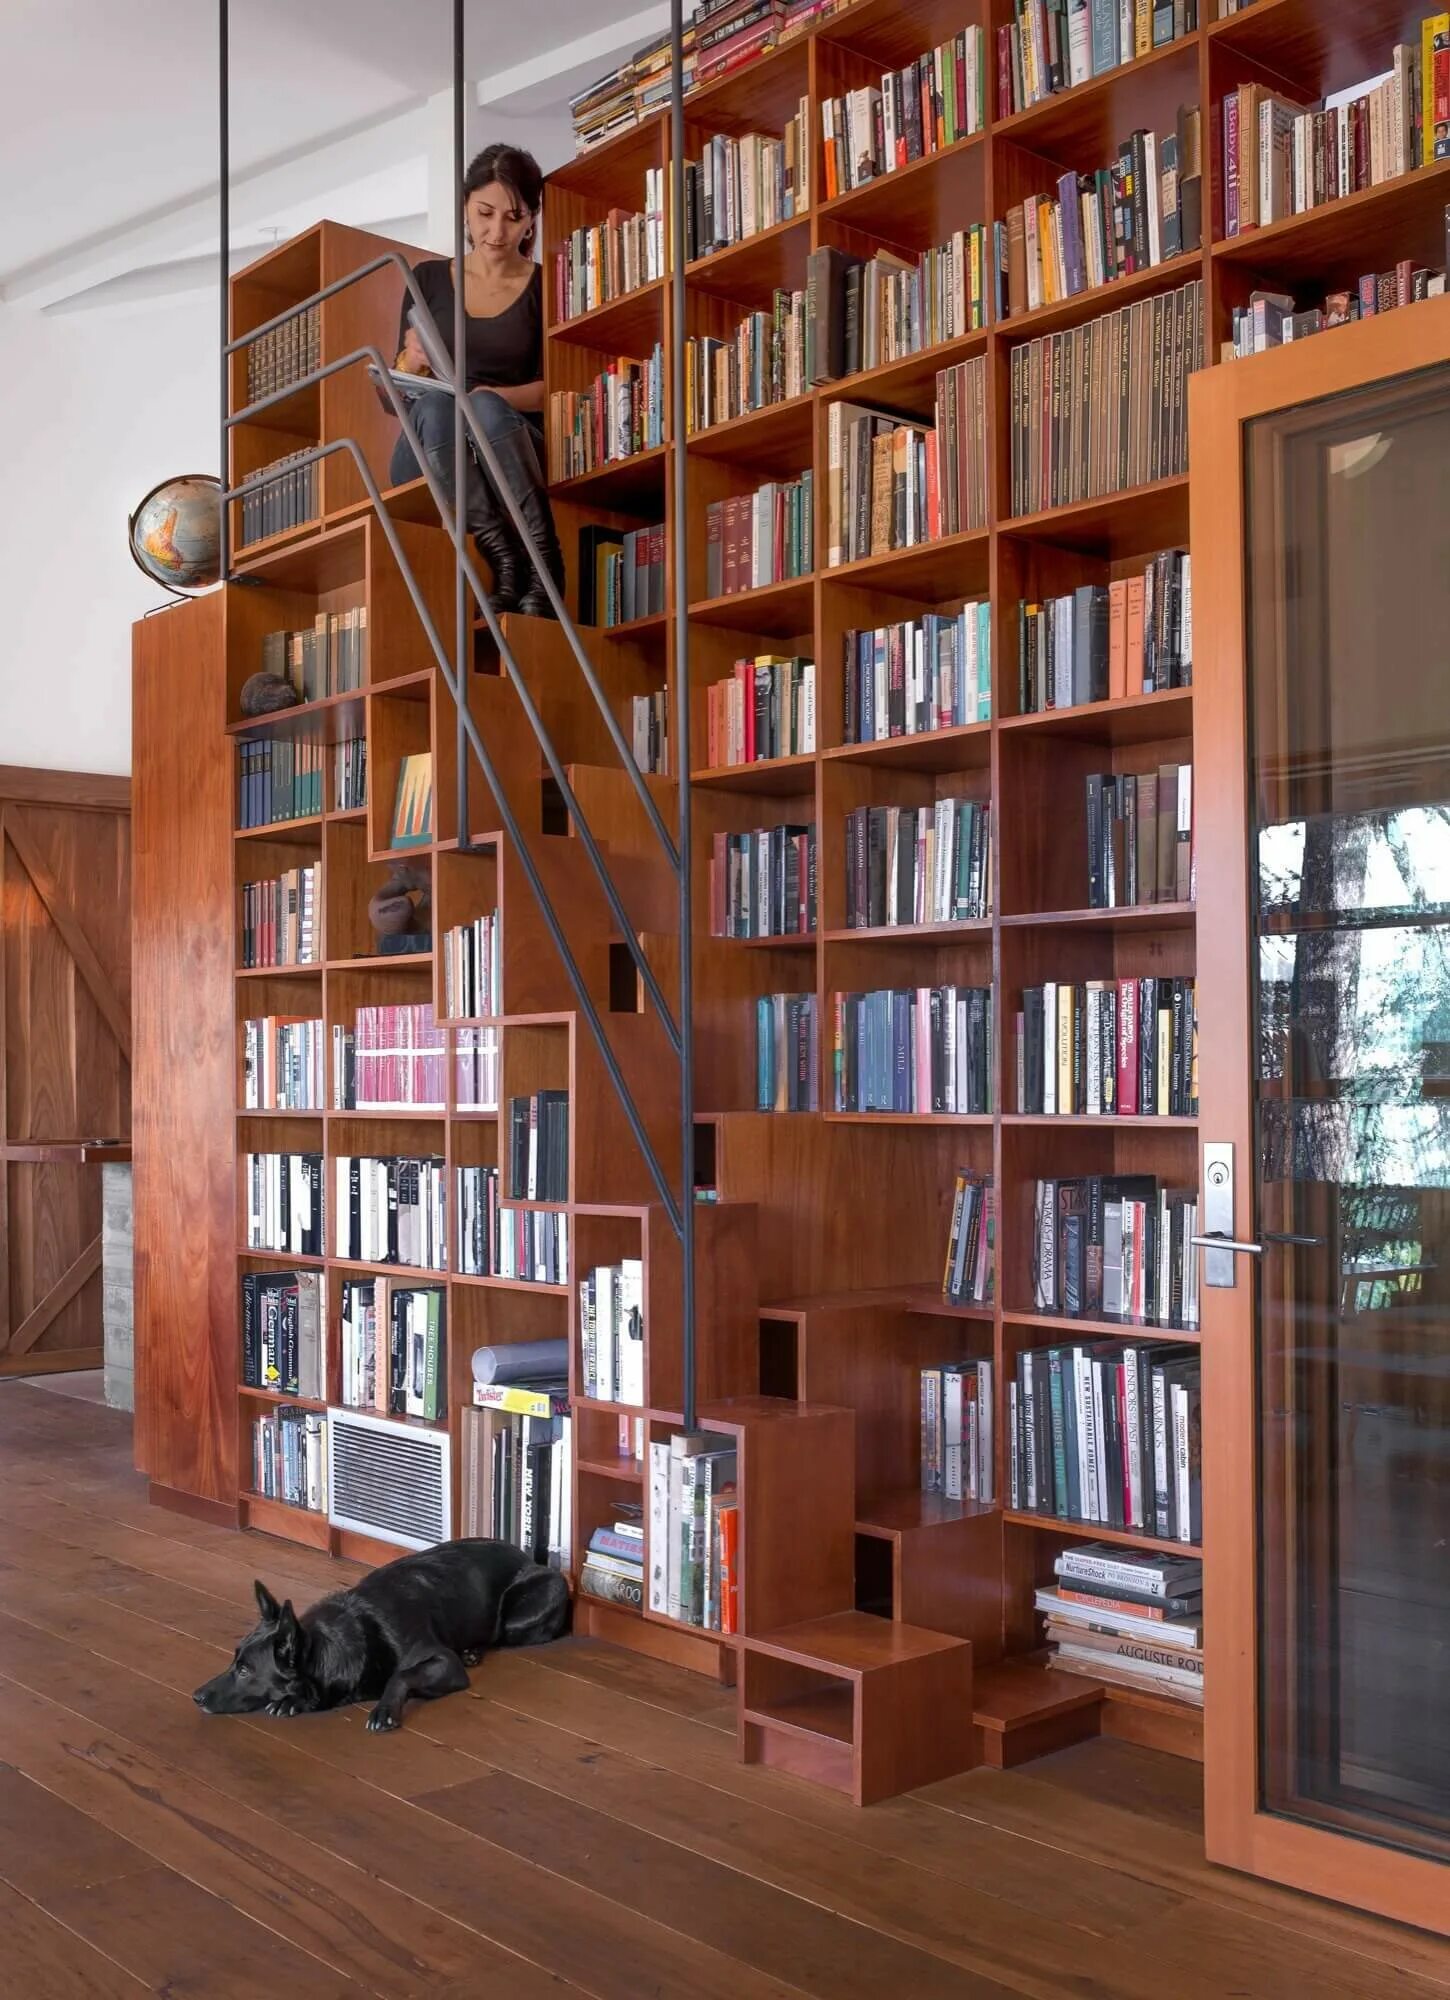 Стеллаж книжный. Лестница для библиотеки. Комната с книжными полками. Стеллаж библиотечный. Прокат книг